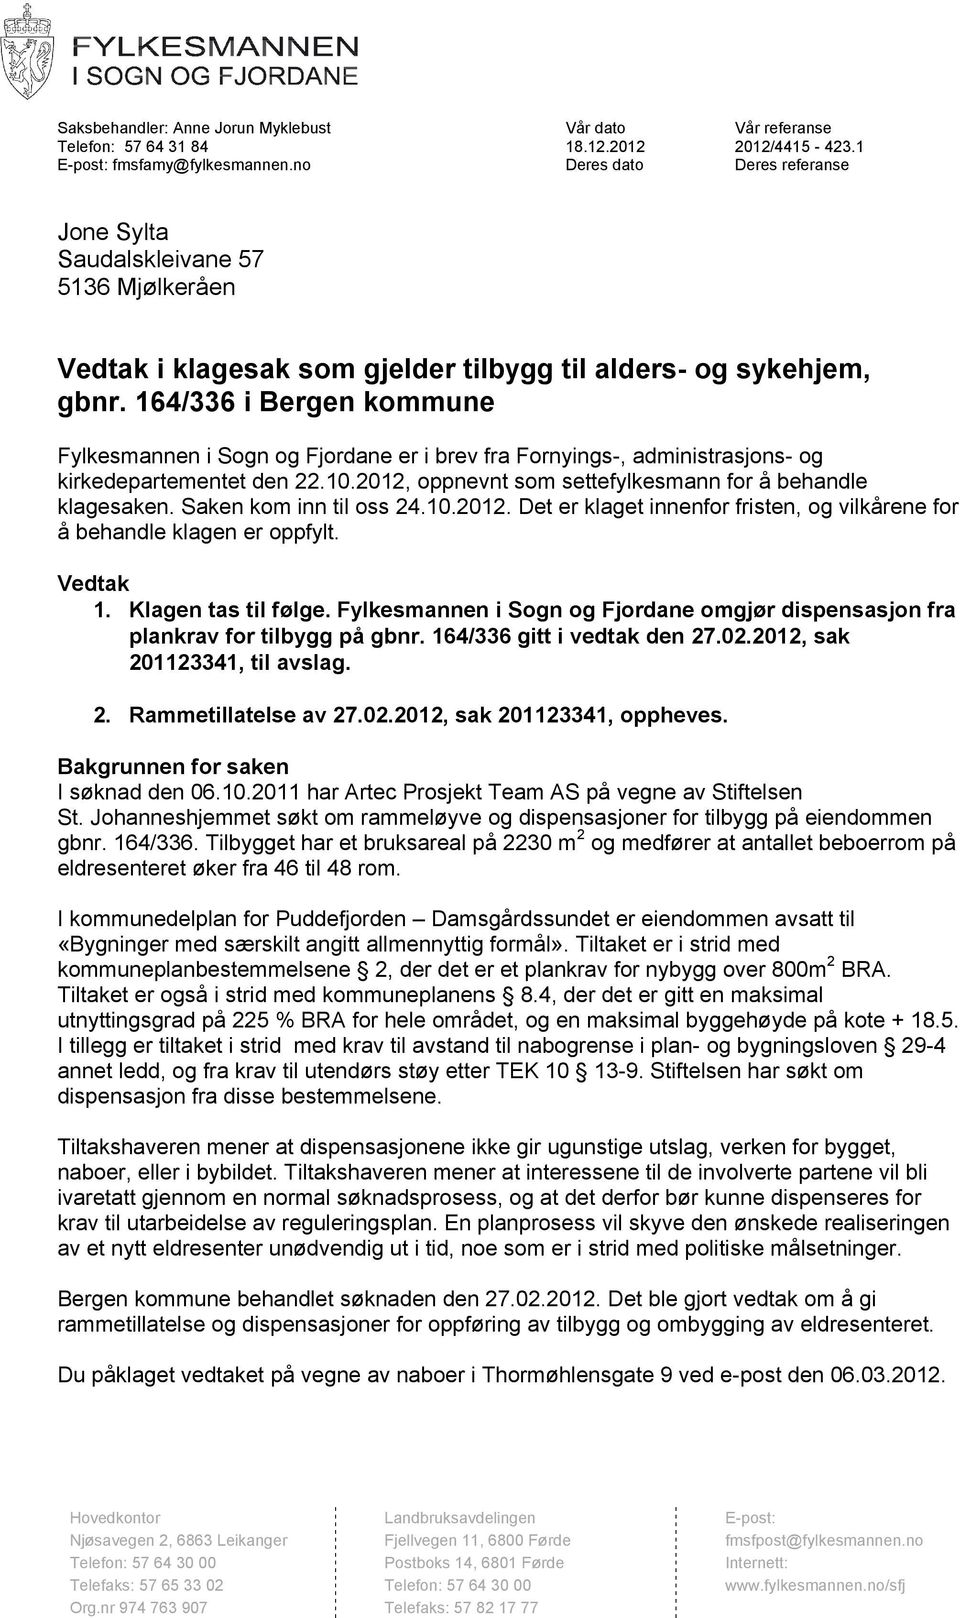 164/336 i Bergen kommune Fylkesmannen i Sogn og Fjordane er i brev fra Fornyings-, administrasjons- og kirkedepartementet den 22.10.2012, oppnevnt som settefylkesmann for å behandle klagesaken.